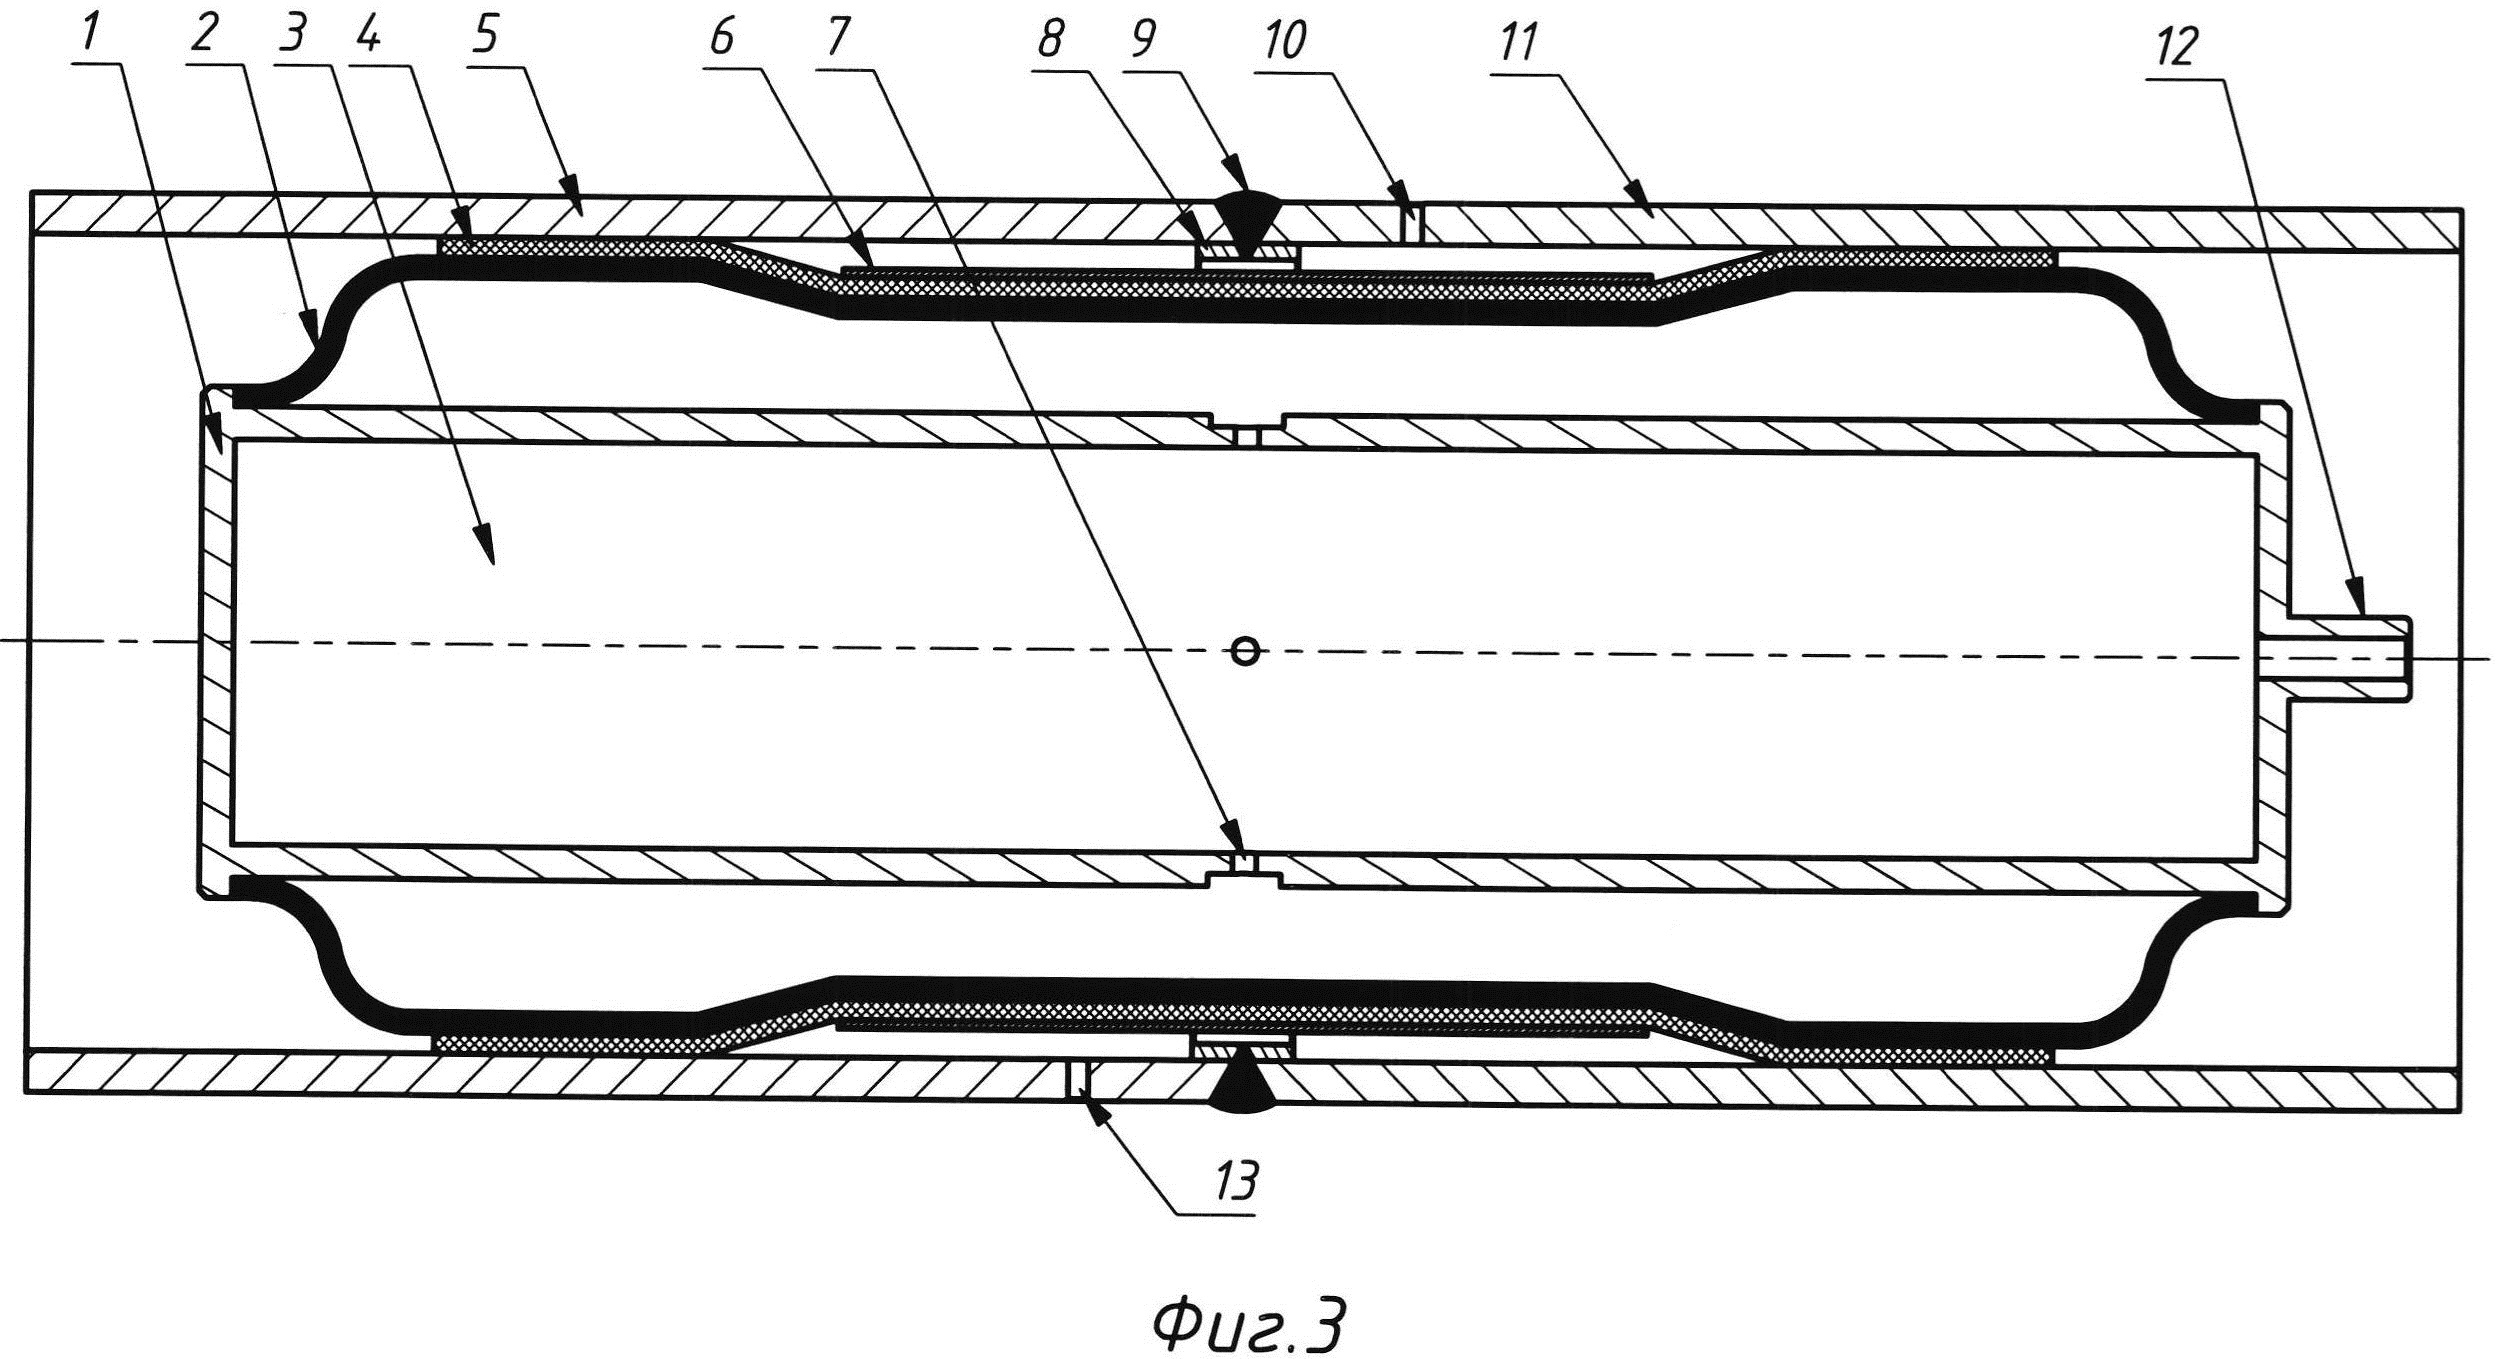 Способ Чуйко внутренней монолитной изоляции сварного соединения трубопровода (варианты)